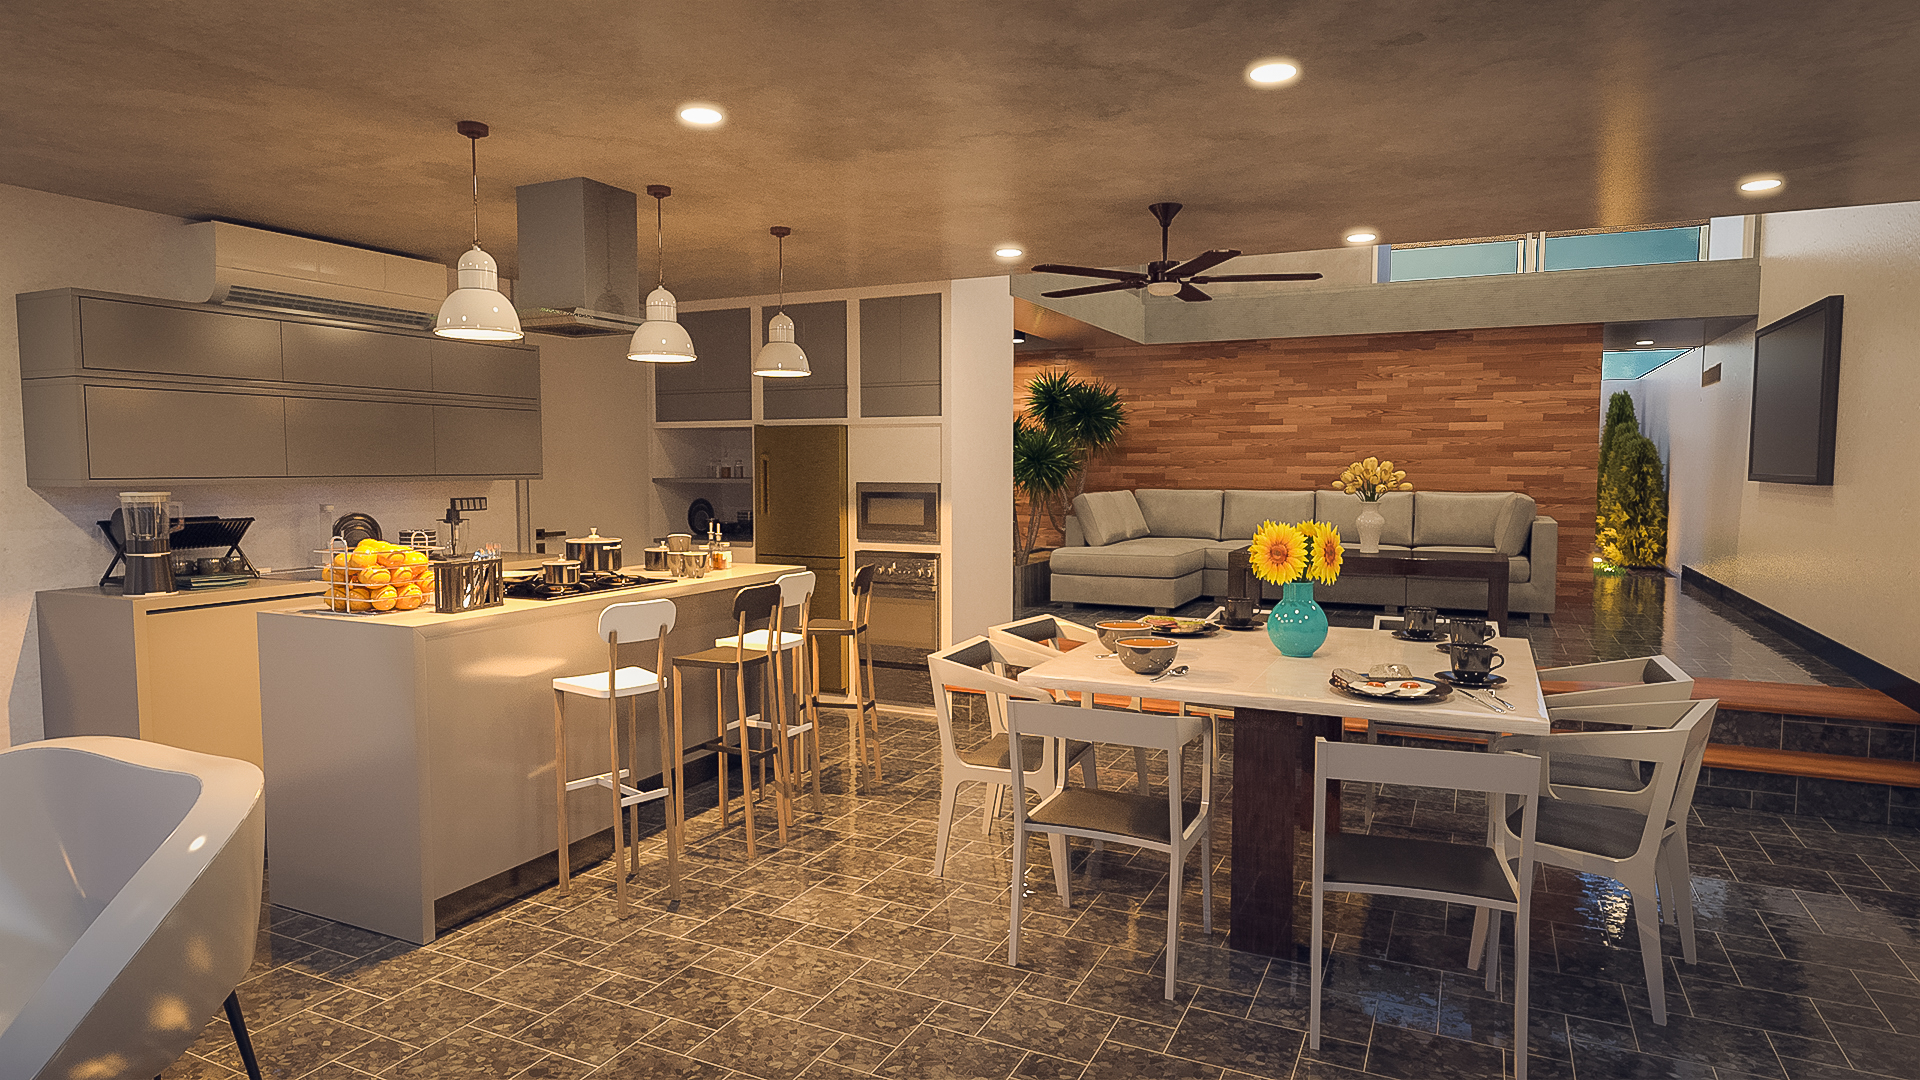 Sleek Modern Home by: bituka3d, 3D Models by Daz 3D